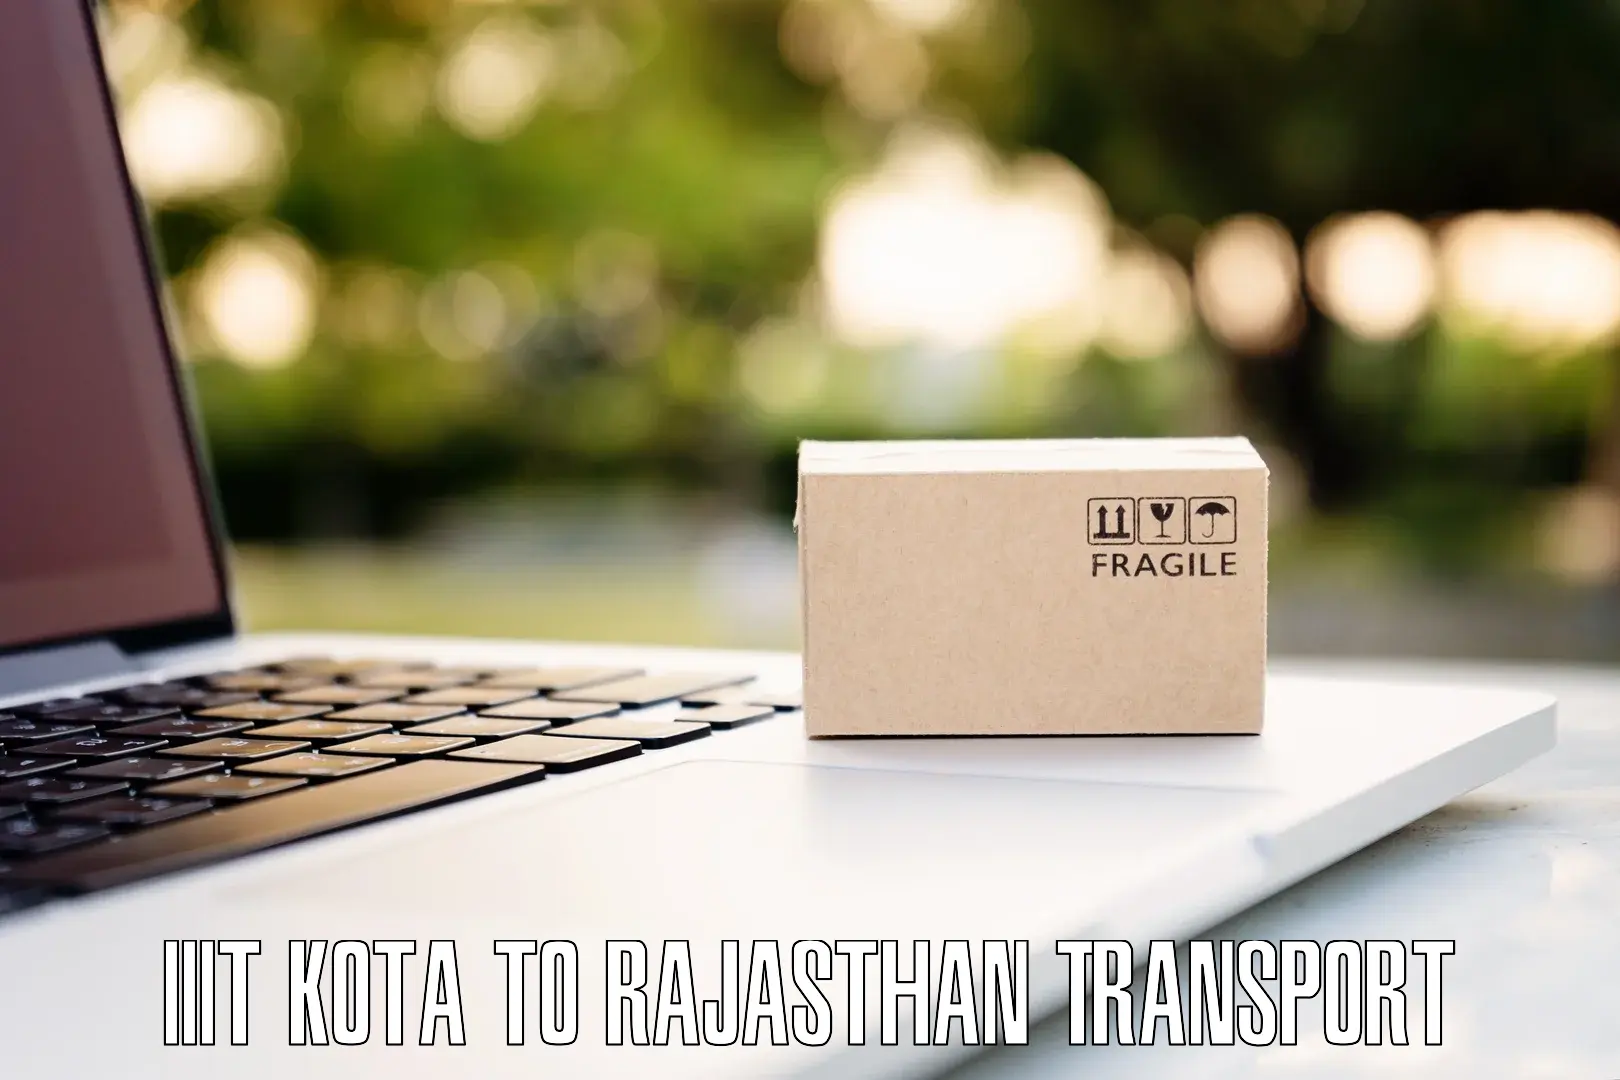 Nearest transport service IIIT Kota to Jaipur